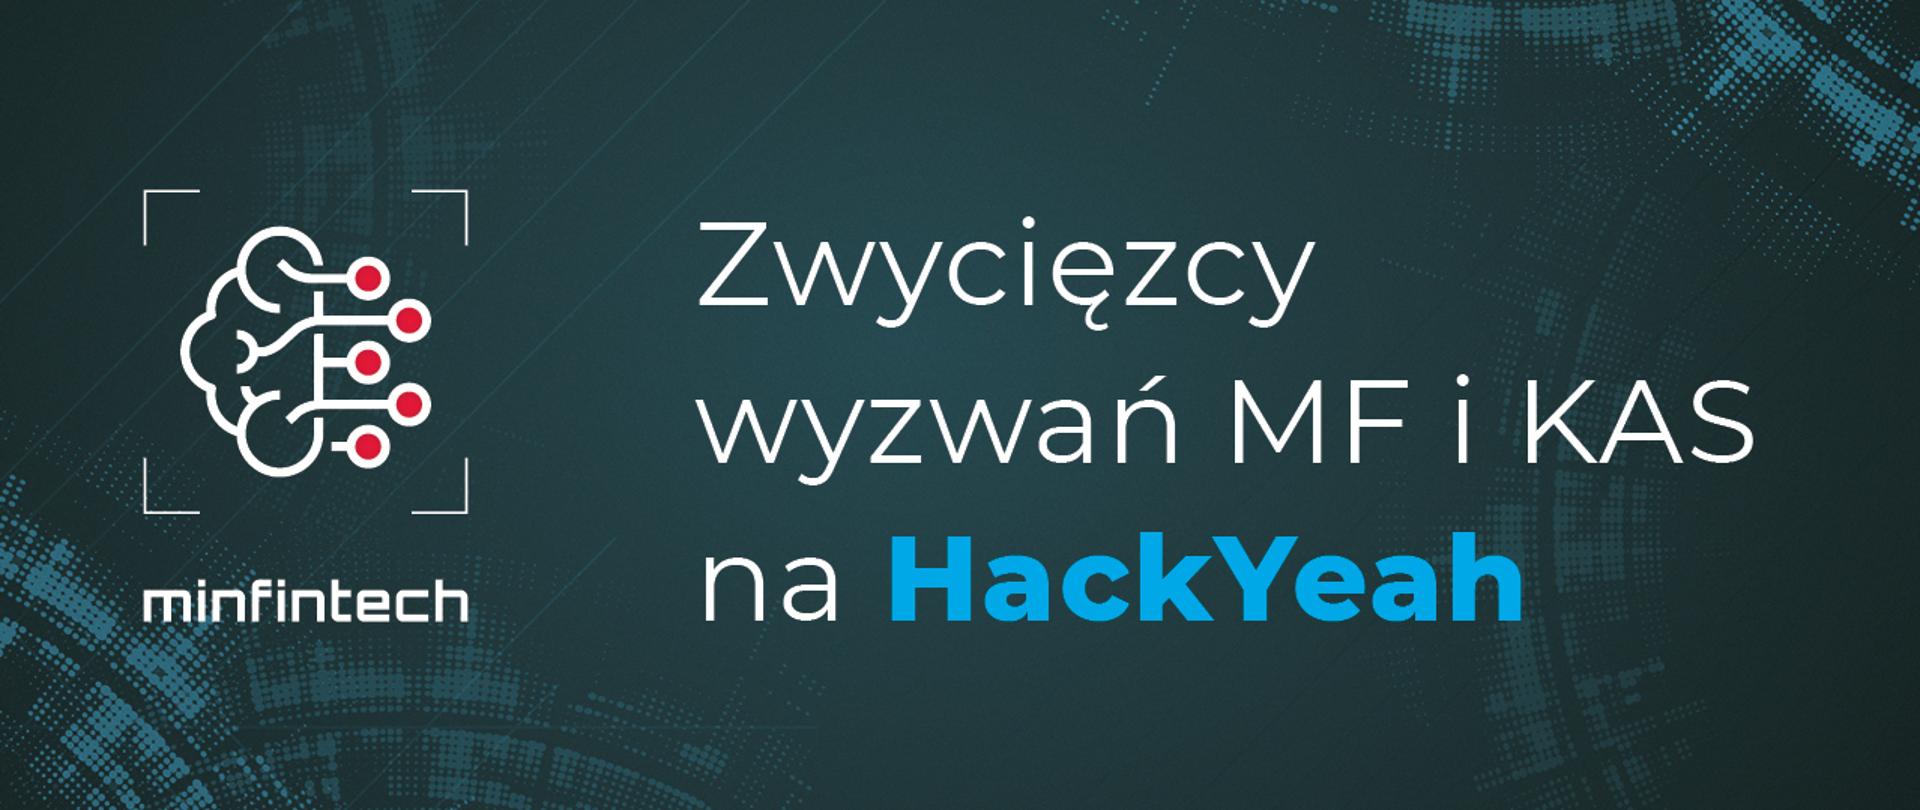 Plansza z napisem Zwycięzcy wyzwań MF i KAS na HackYeah. Logotypy: MINFINTECH, Ministerstwo Finansów, Krajowa Administracja Skarbowa